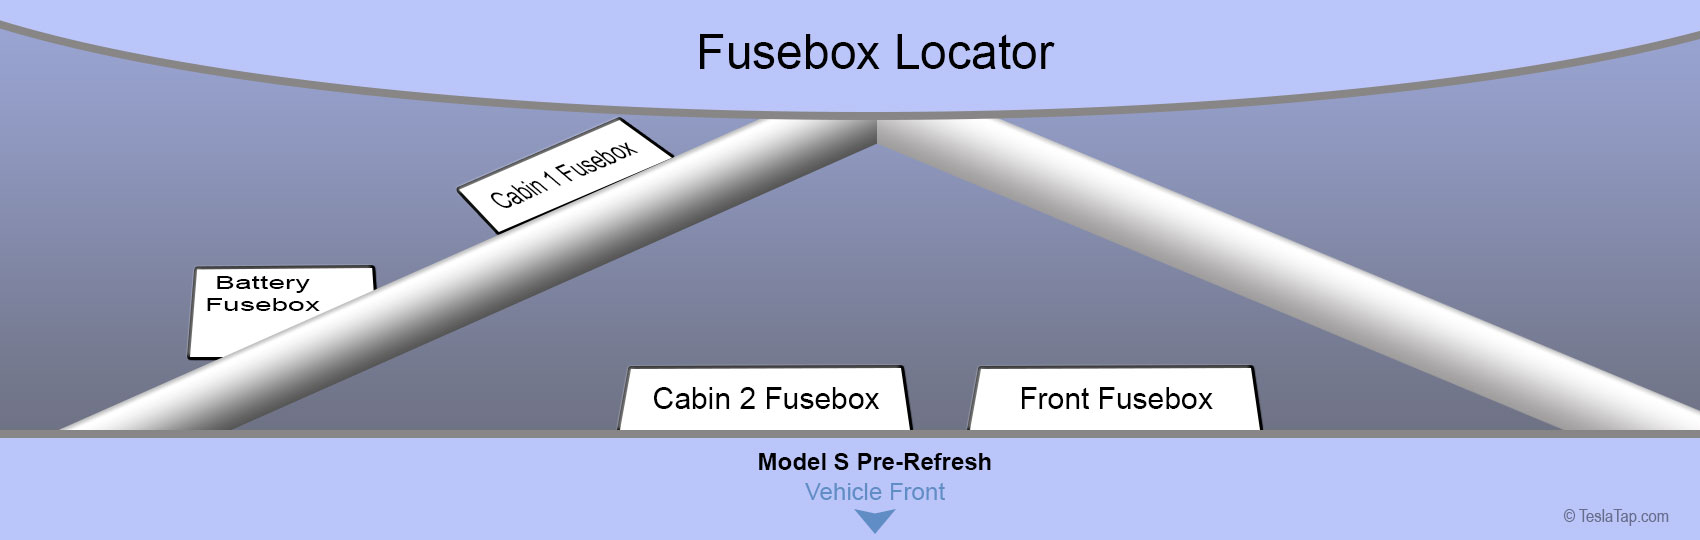 Fusebox locator